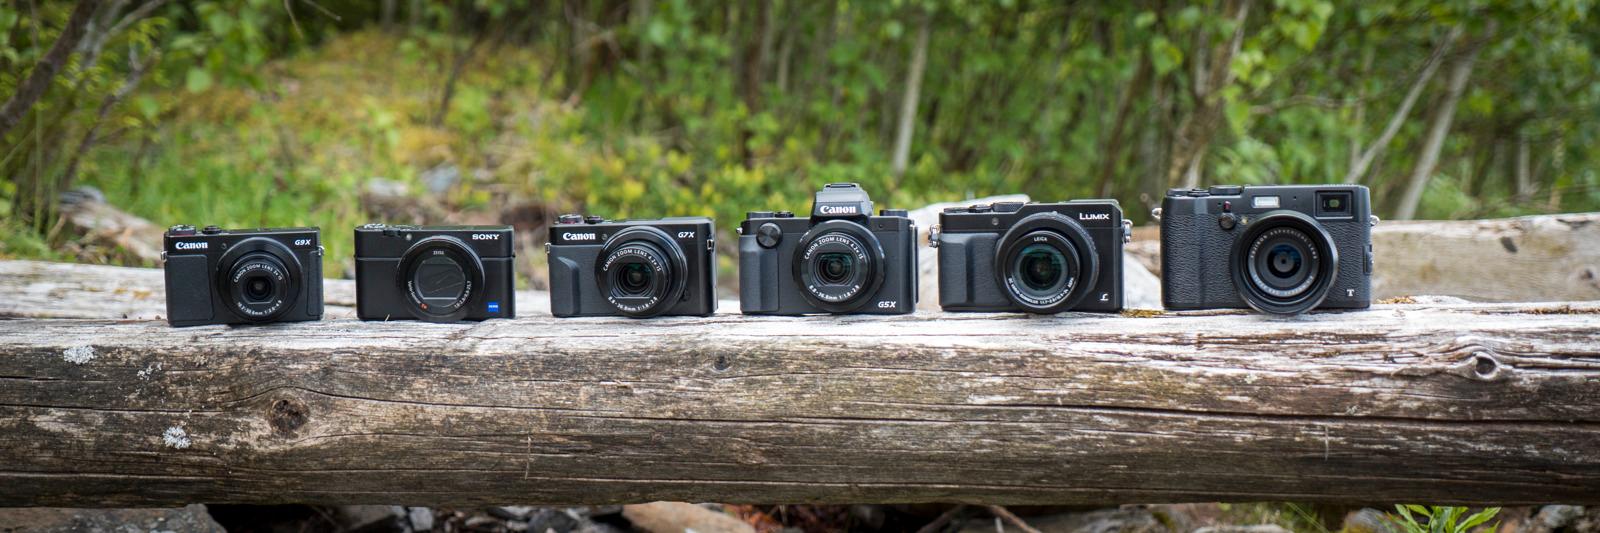 Sortert fra størst til minst, fra venstre: Canon G9 X, Sony RX100 IV, Canon G7 X Mark II, Canon G5 X, Panasonic Lumix LX100 og Fujifilm X100T.